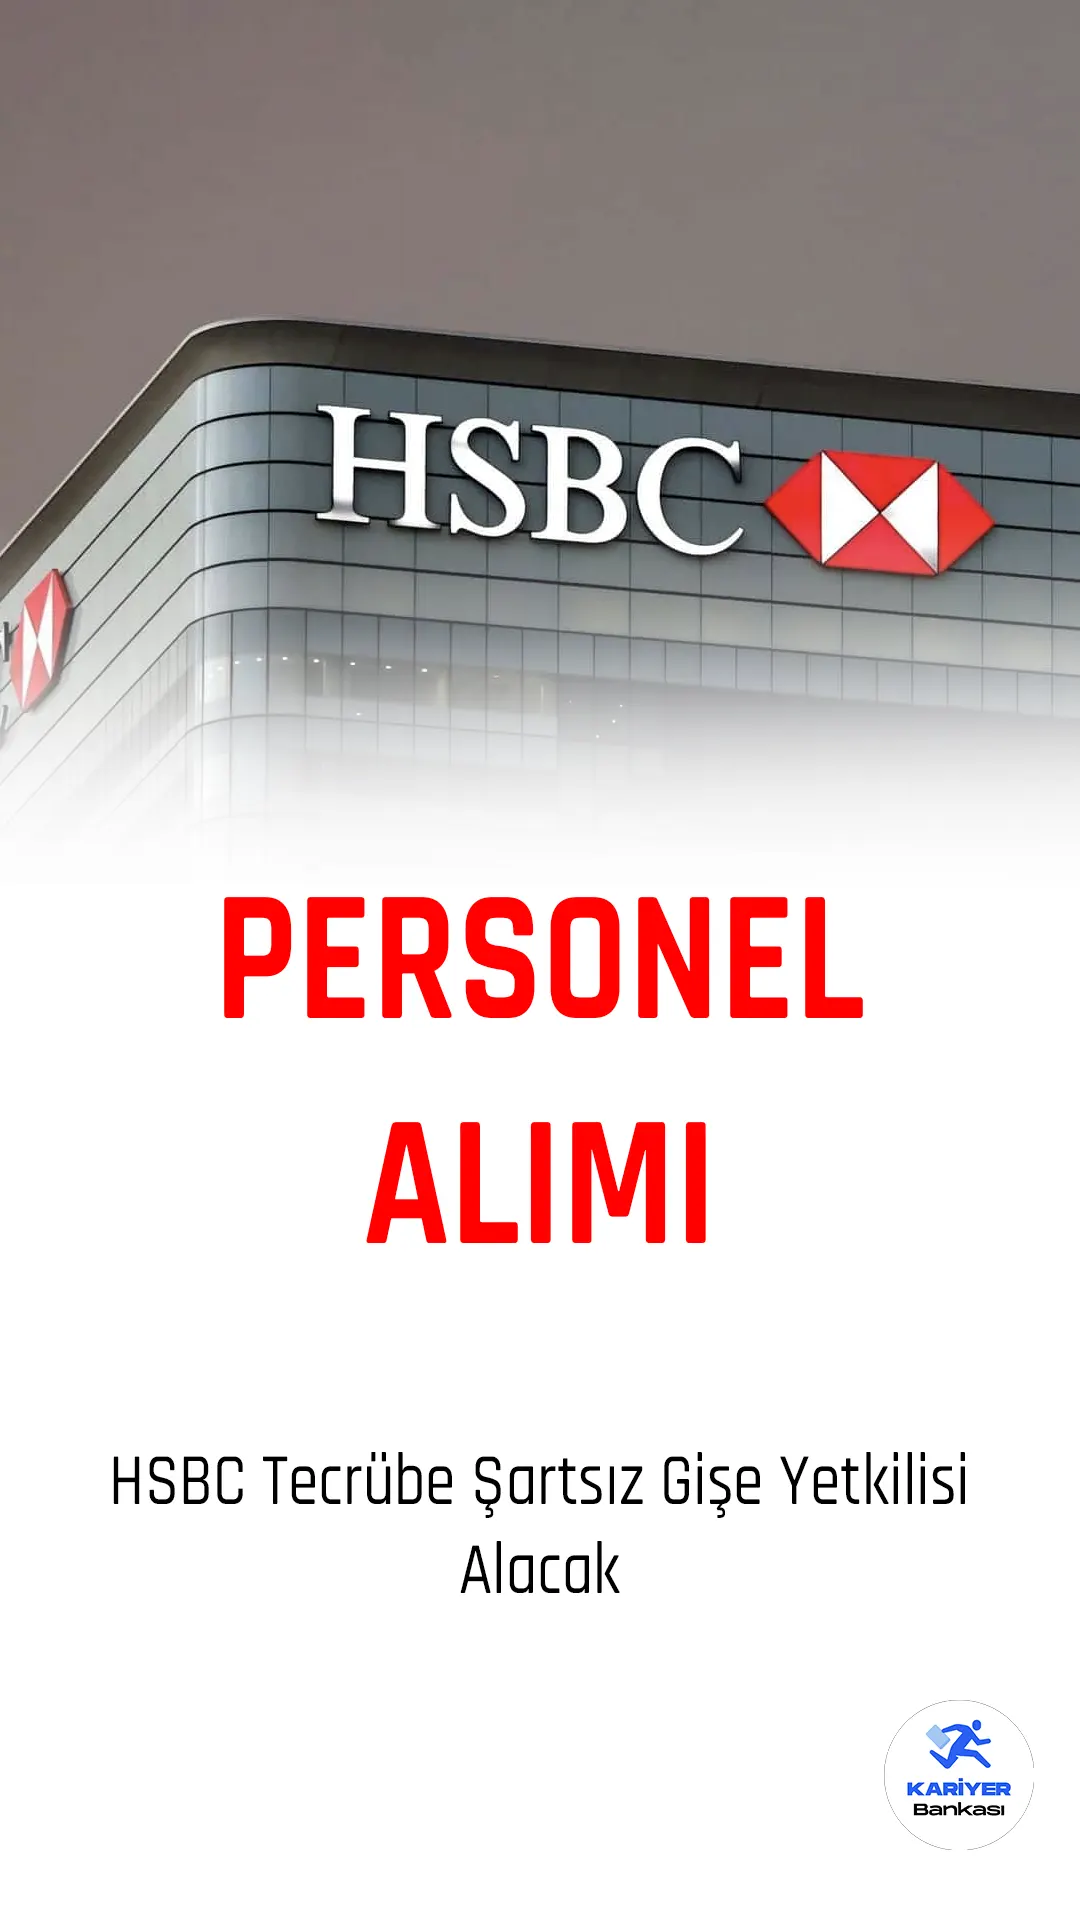 HSBC, İstanbul Avrupa ve Asya yakasında Gişe Yetkilisi arayışında olduğunu duyurdu. Tam zamanlı çalışma şartı ile açık olan pozisyona tecrübeli veya tecrübesiz adaylar başvuruda bulunabilirler.